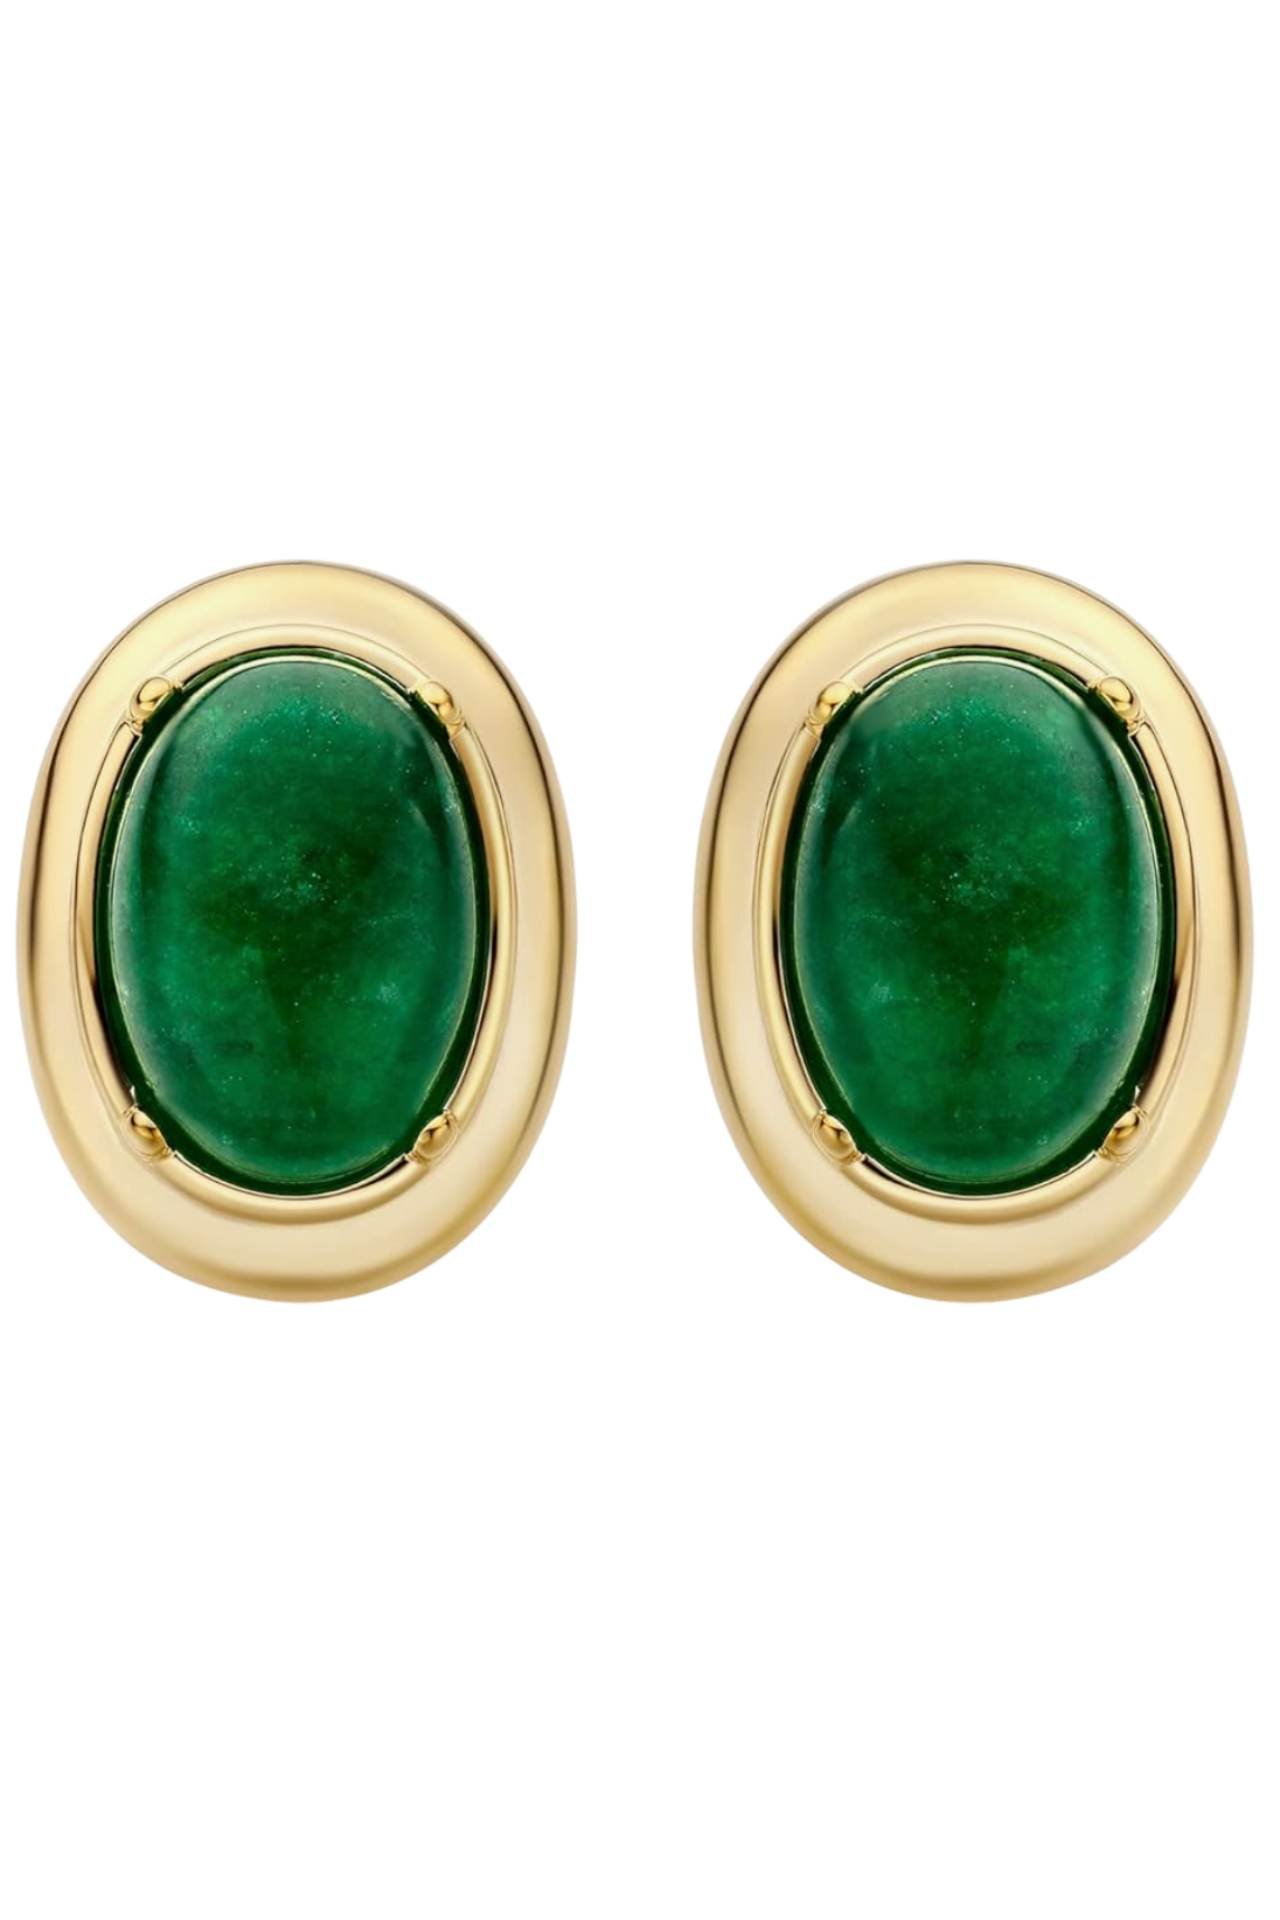 green oval cut earrings